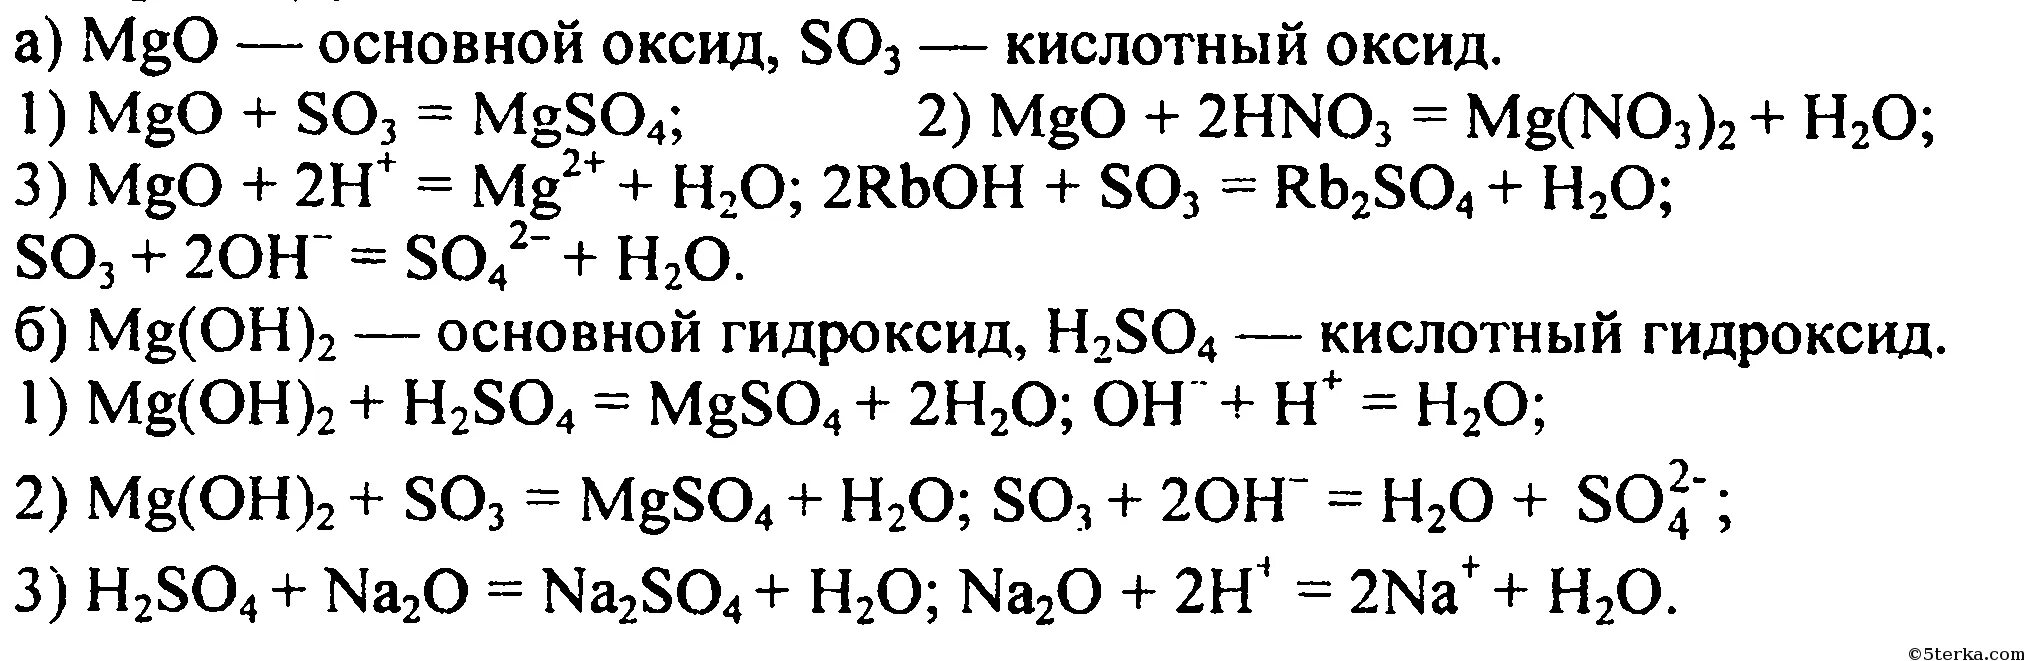 Уравнение химической реакции MGO И so3. Химические уравнения магний хлор 2. Цепочка реакций с магнием. MGO+h2so4 уравнение реакции. Уравнение реакции муравьиной кислоты с оксидом магния